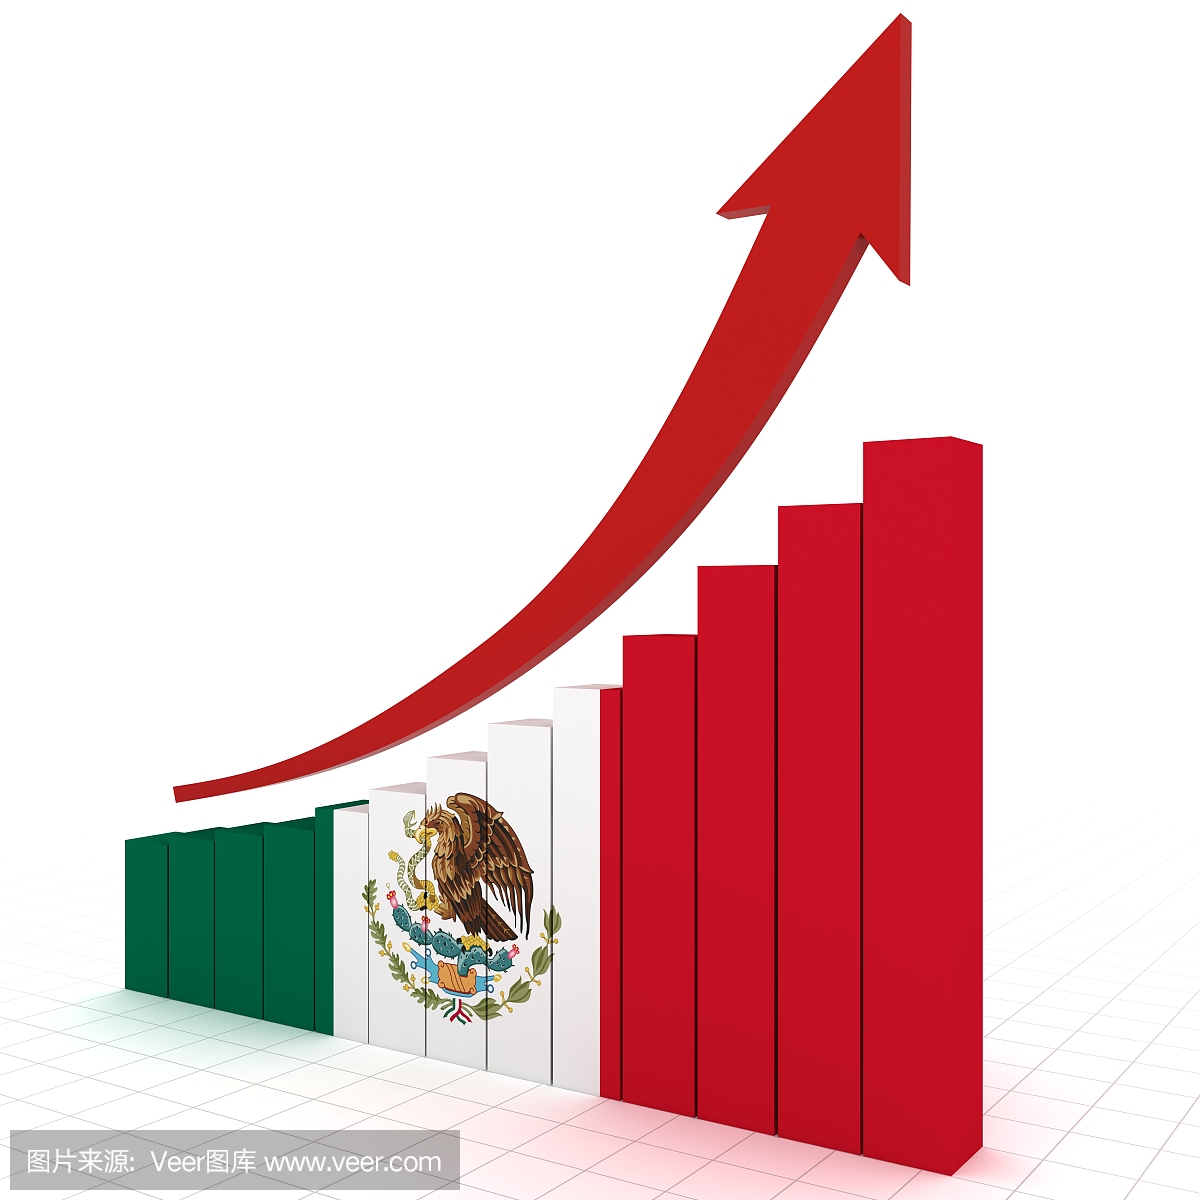 墨西哥经济增长